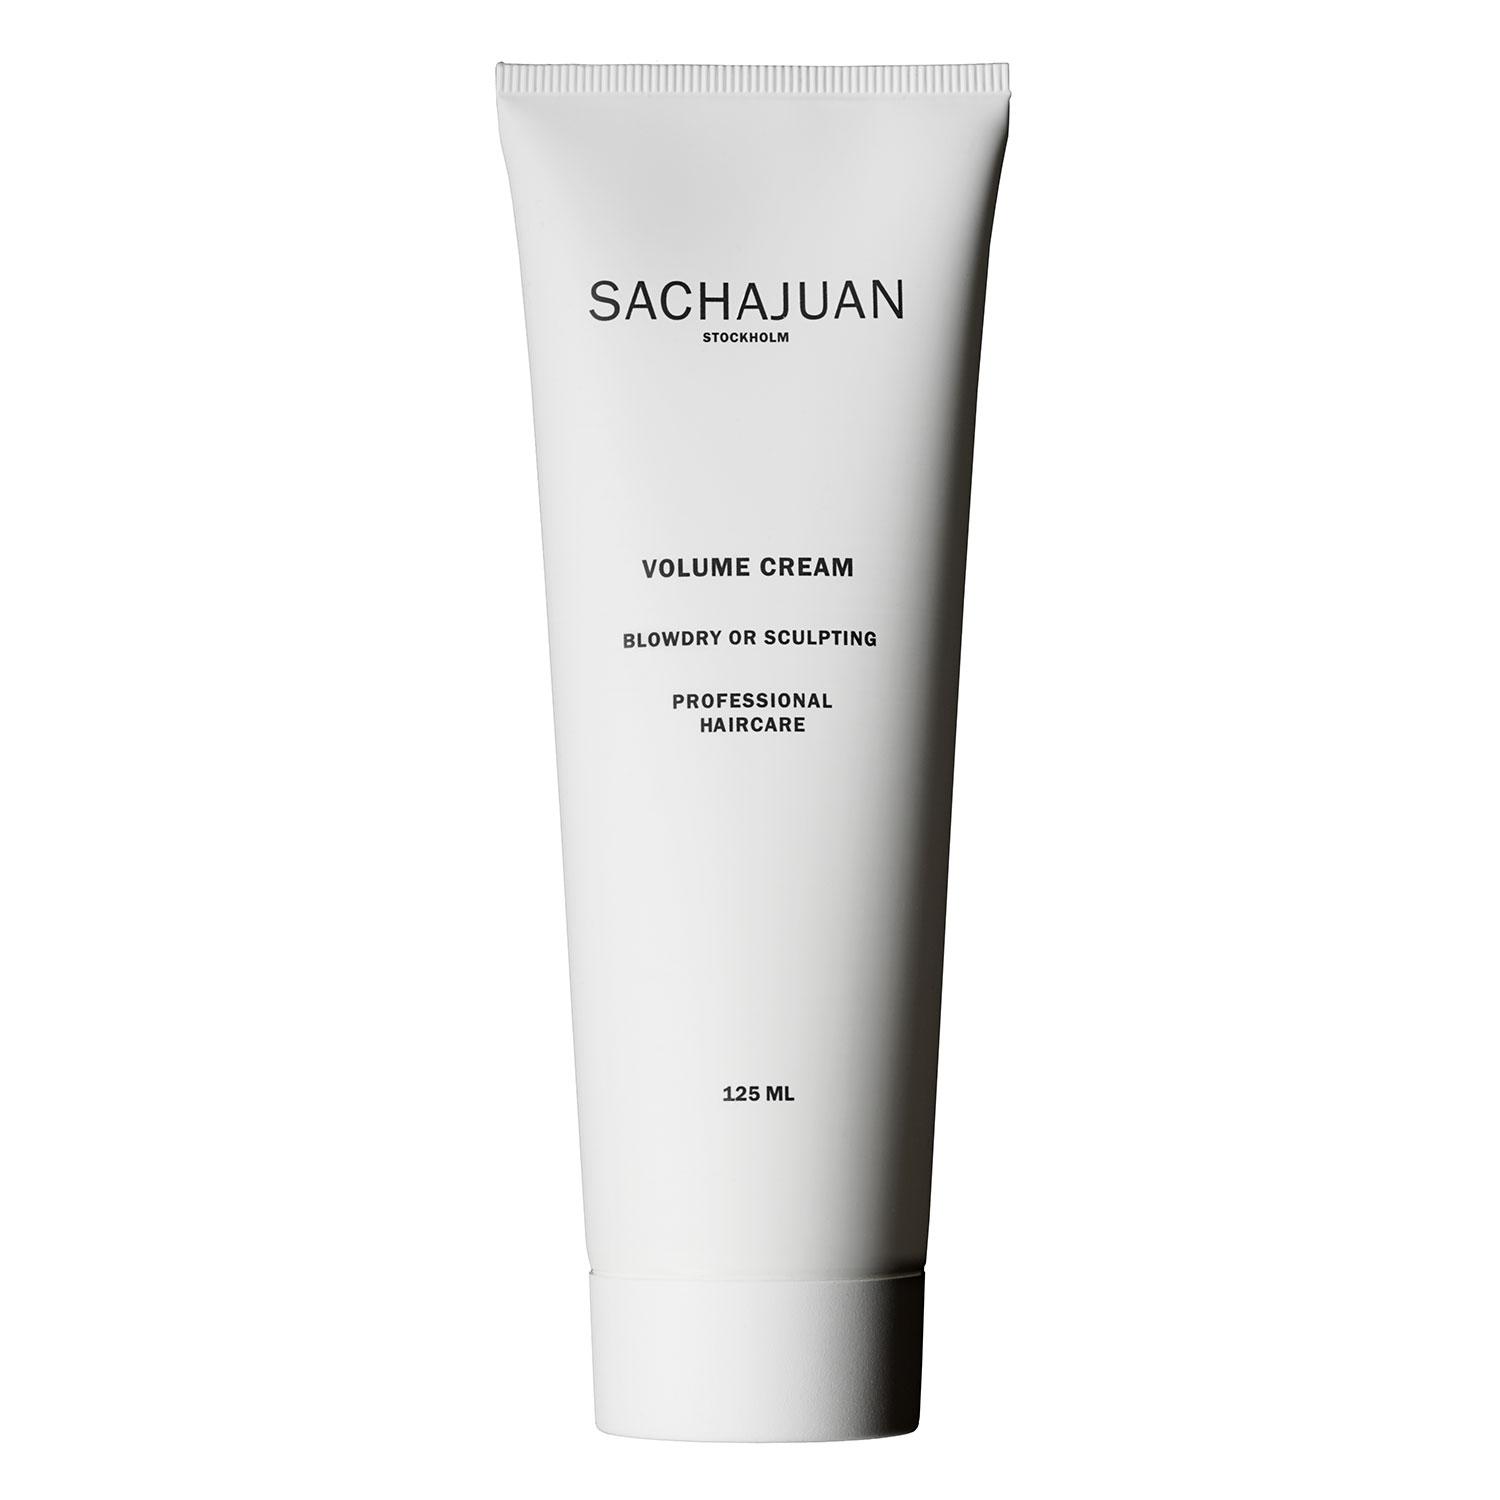 SACHAJUAN - Volume Cream